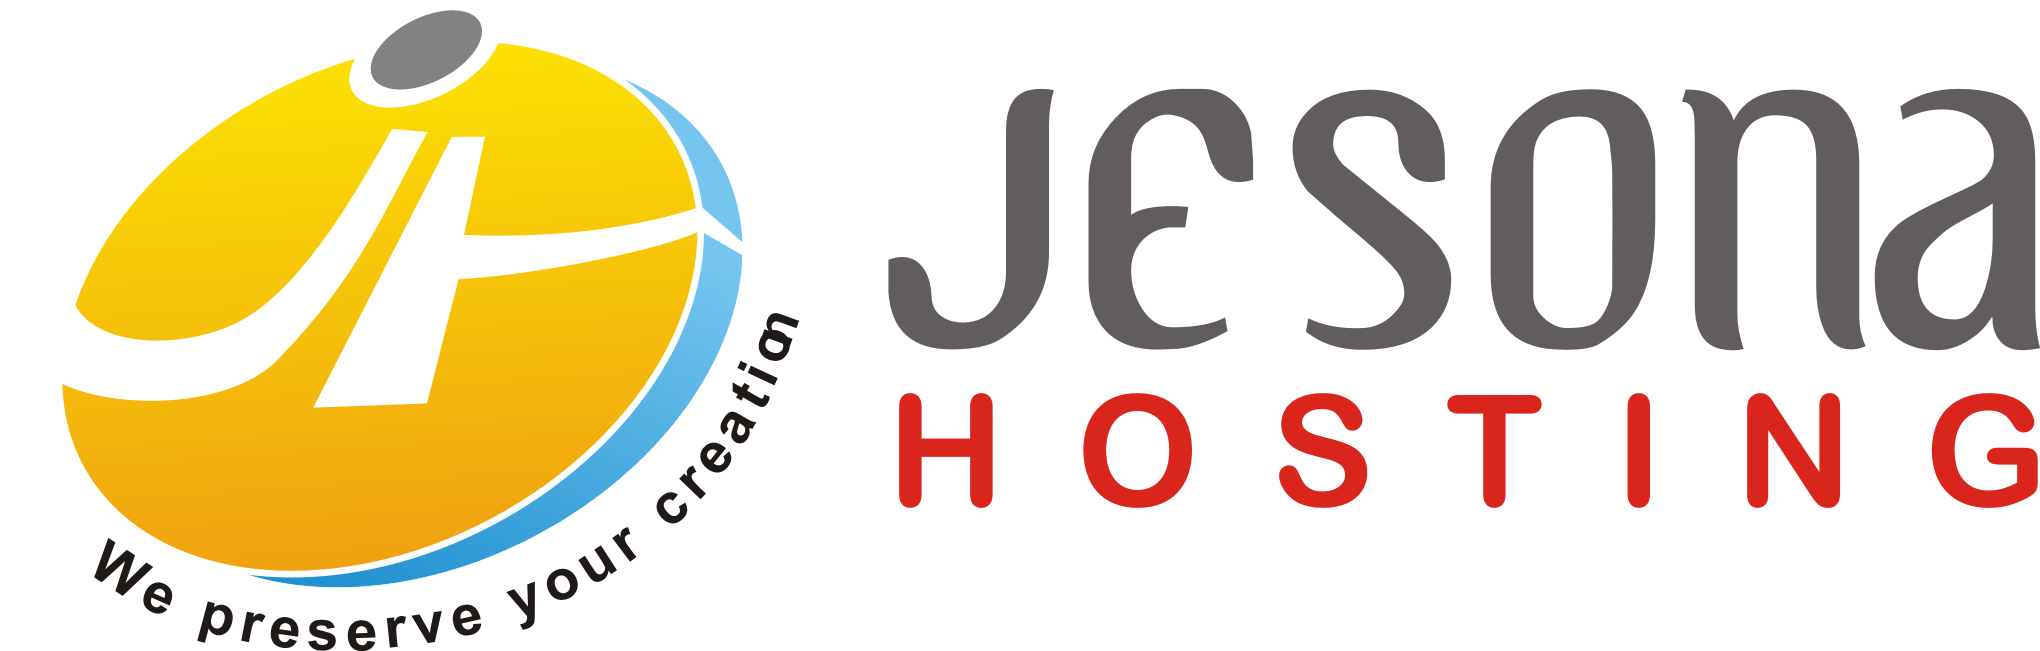 Jesona Hosting